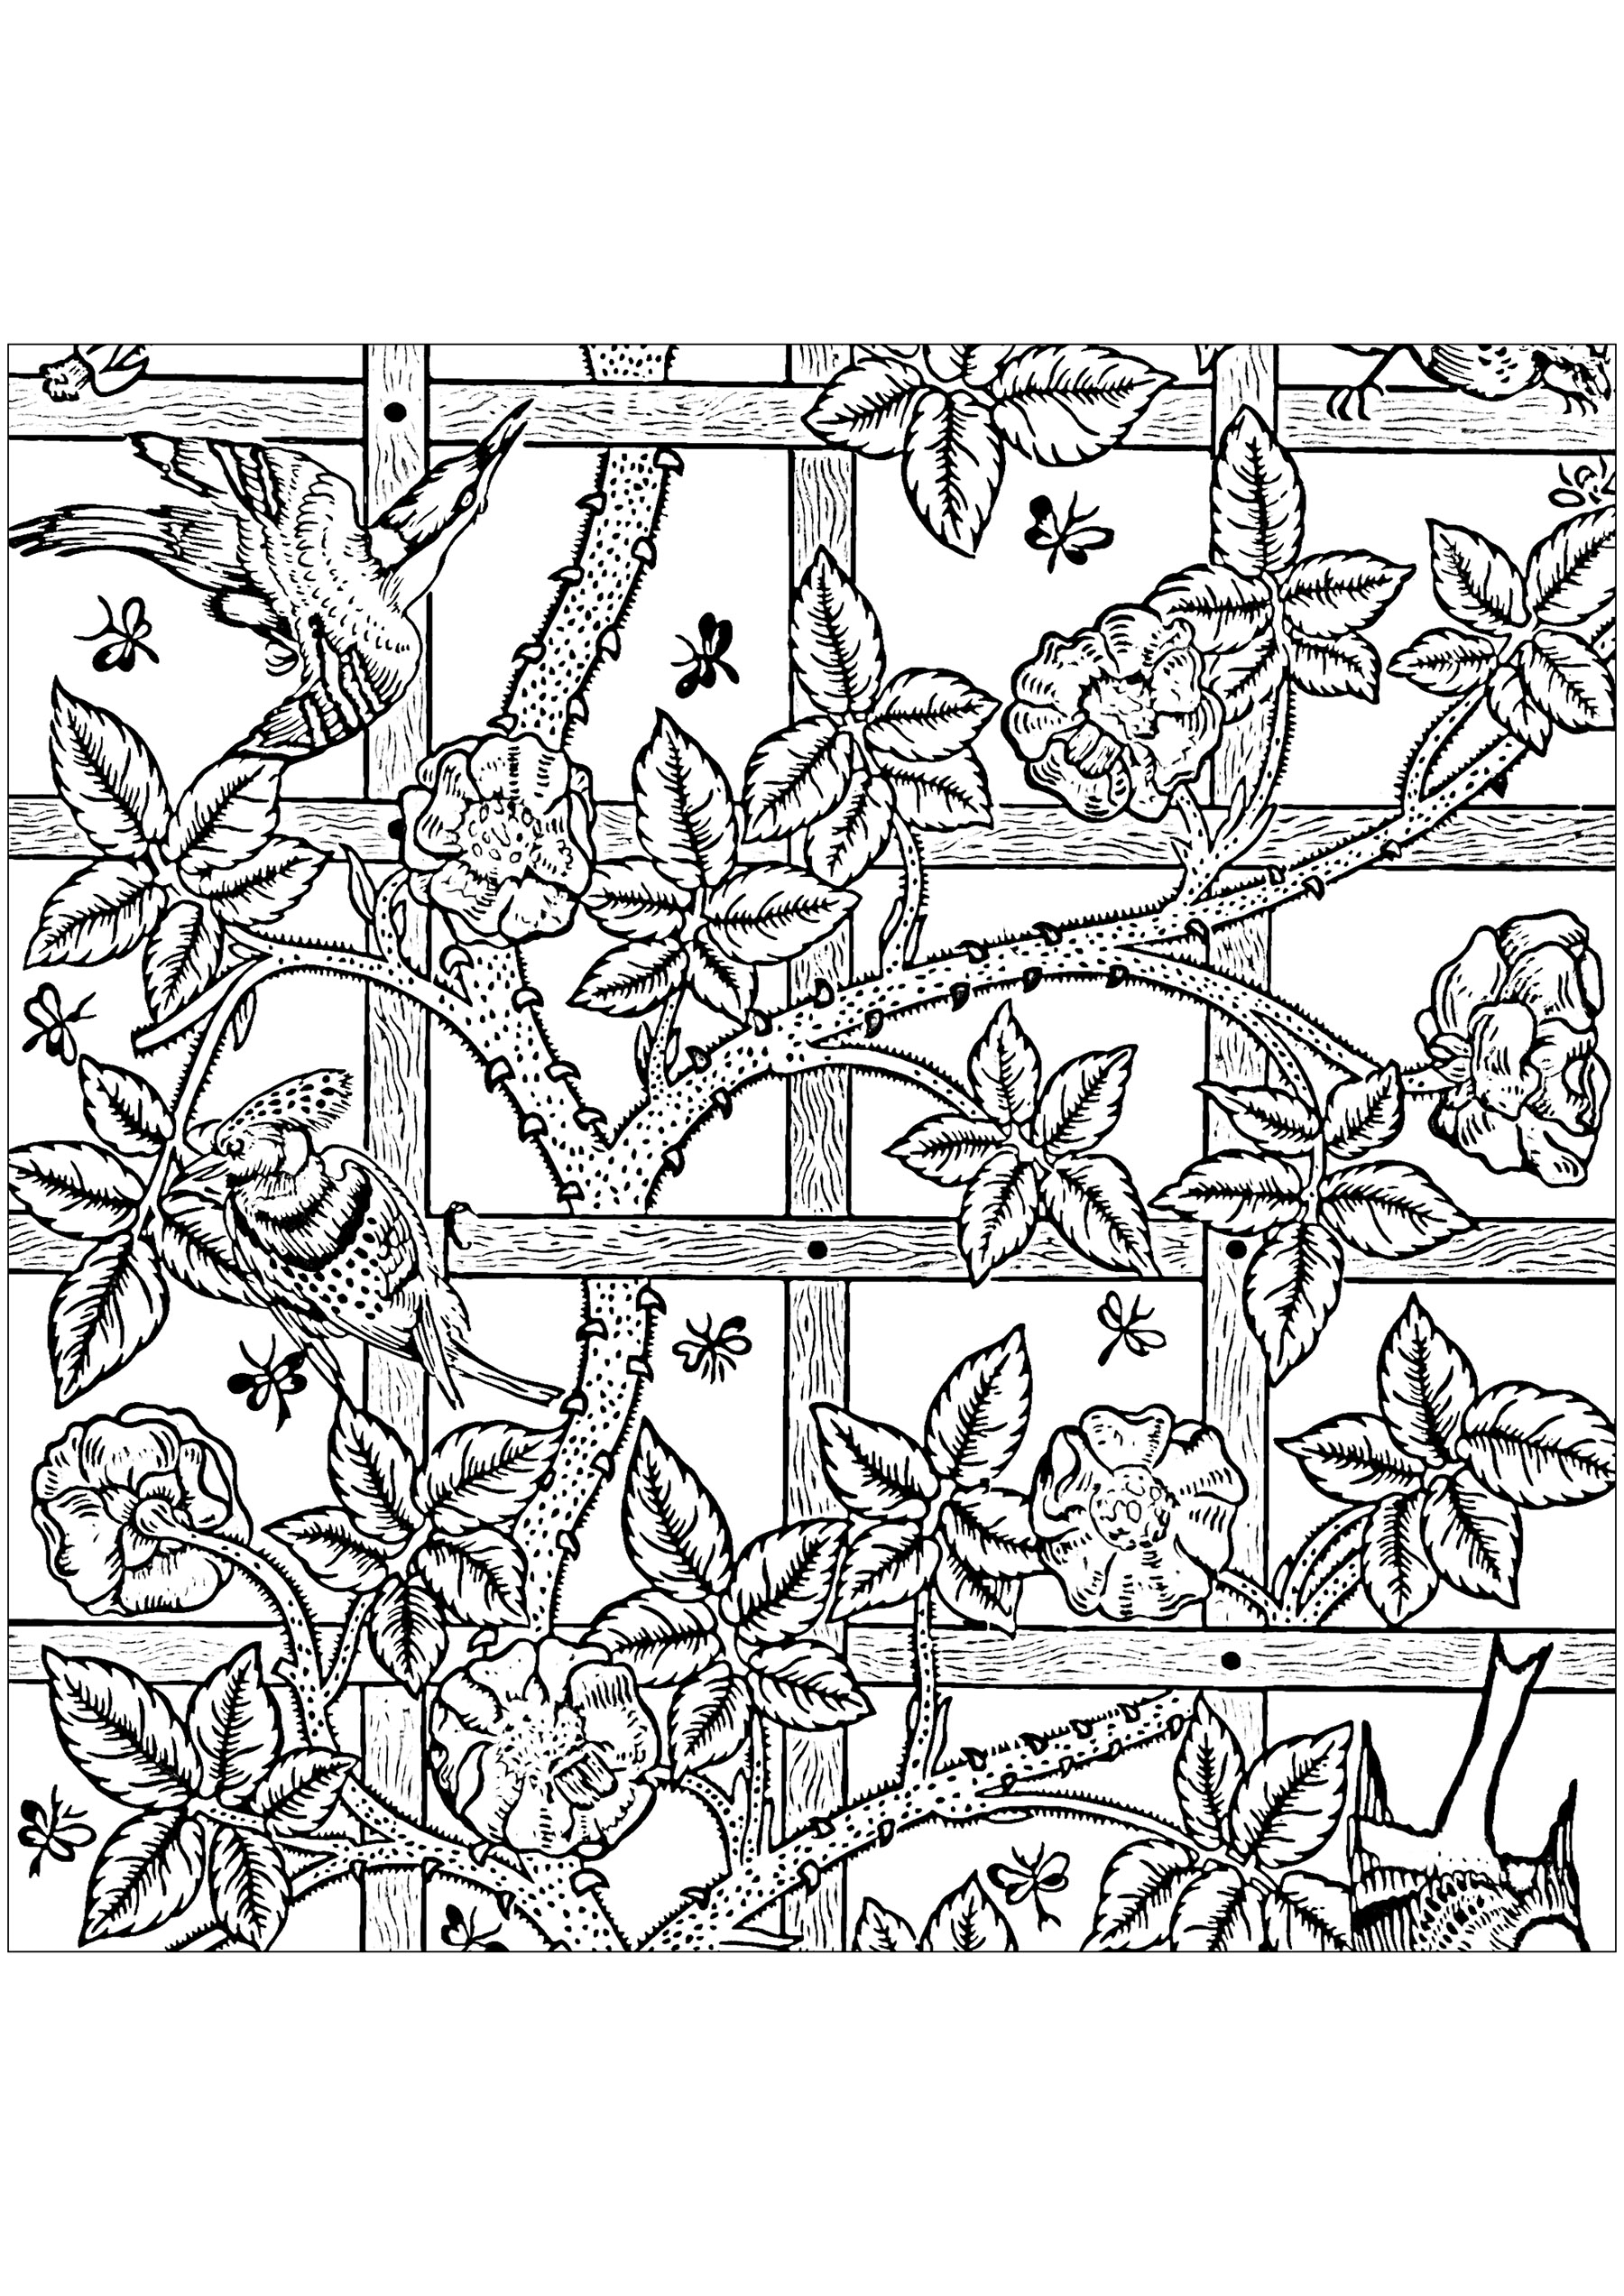 Coloriage créé à partir du motif de papier peint créé par William Morris : 'Treillis' en 1864. En Grande-Bretagne, le papier imprimé de motifs est utilisé pour la décoration des murs depuis le XVIe siècle. À la fin du XIXe siècle, les papiers peints étaient largement utilisés par toutes les classes, dans les maisons et aussi dans les bâtiments publics. William Morris a conçu un certain nombre de papiers peints, tous avec des motifs répétitifs basés sur des formes naturelles et l'inclusion d'animaux.